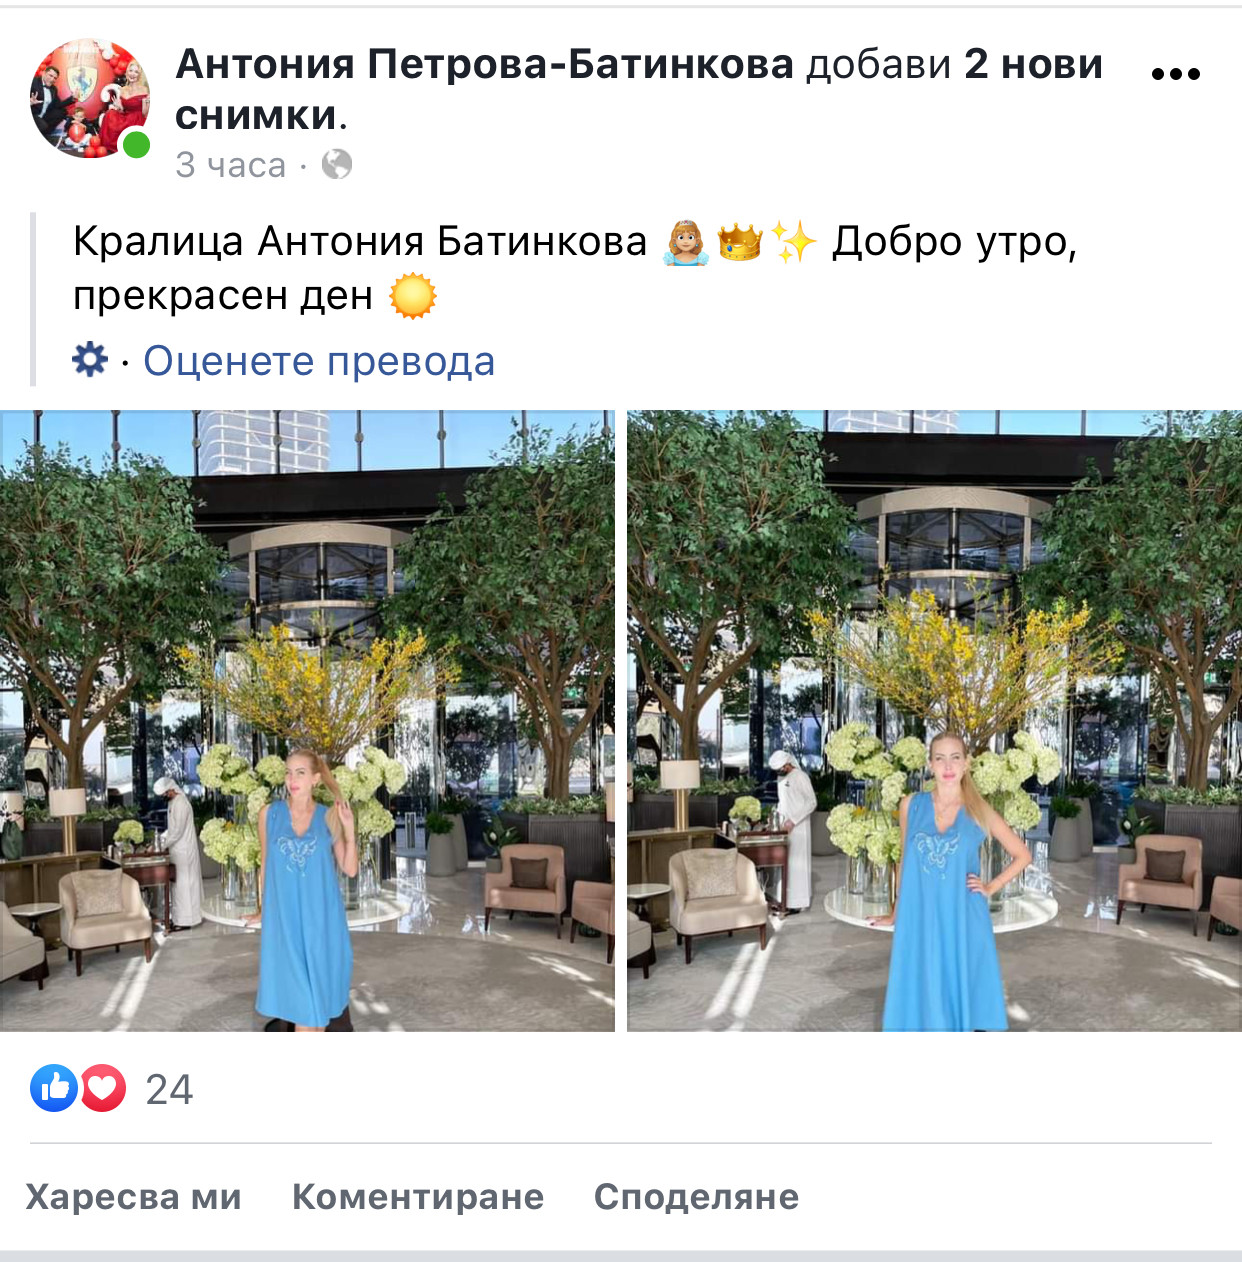 О, небеса: Антония Батинкова се самопровъзгласи за кралица! (още подробности)